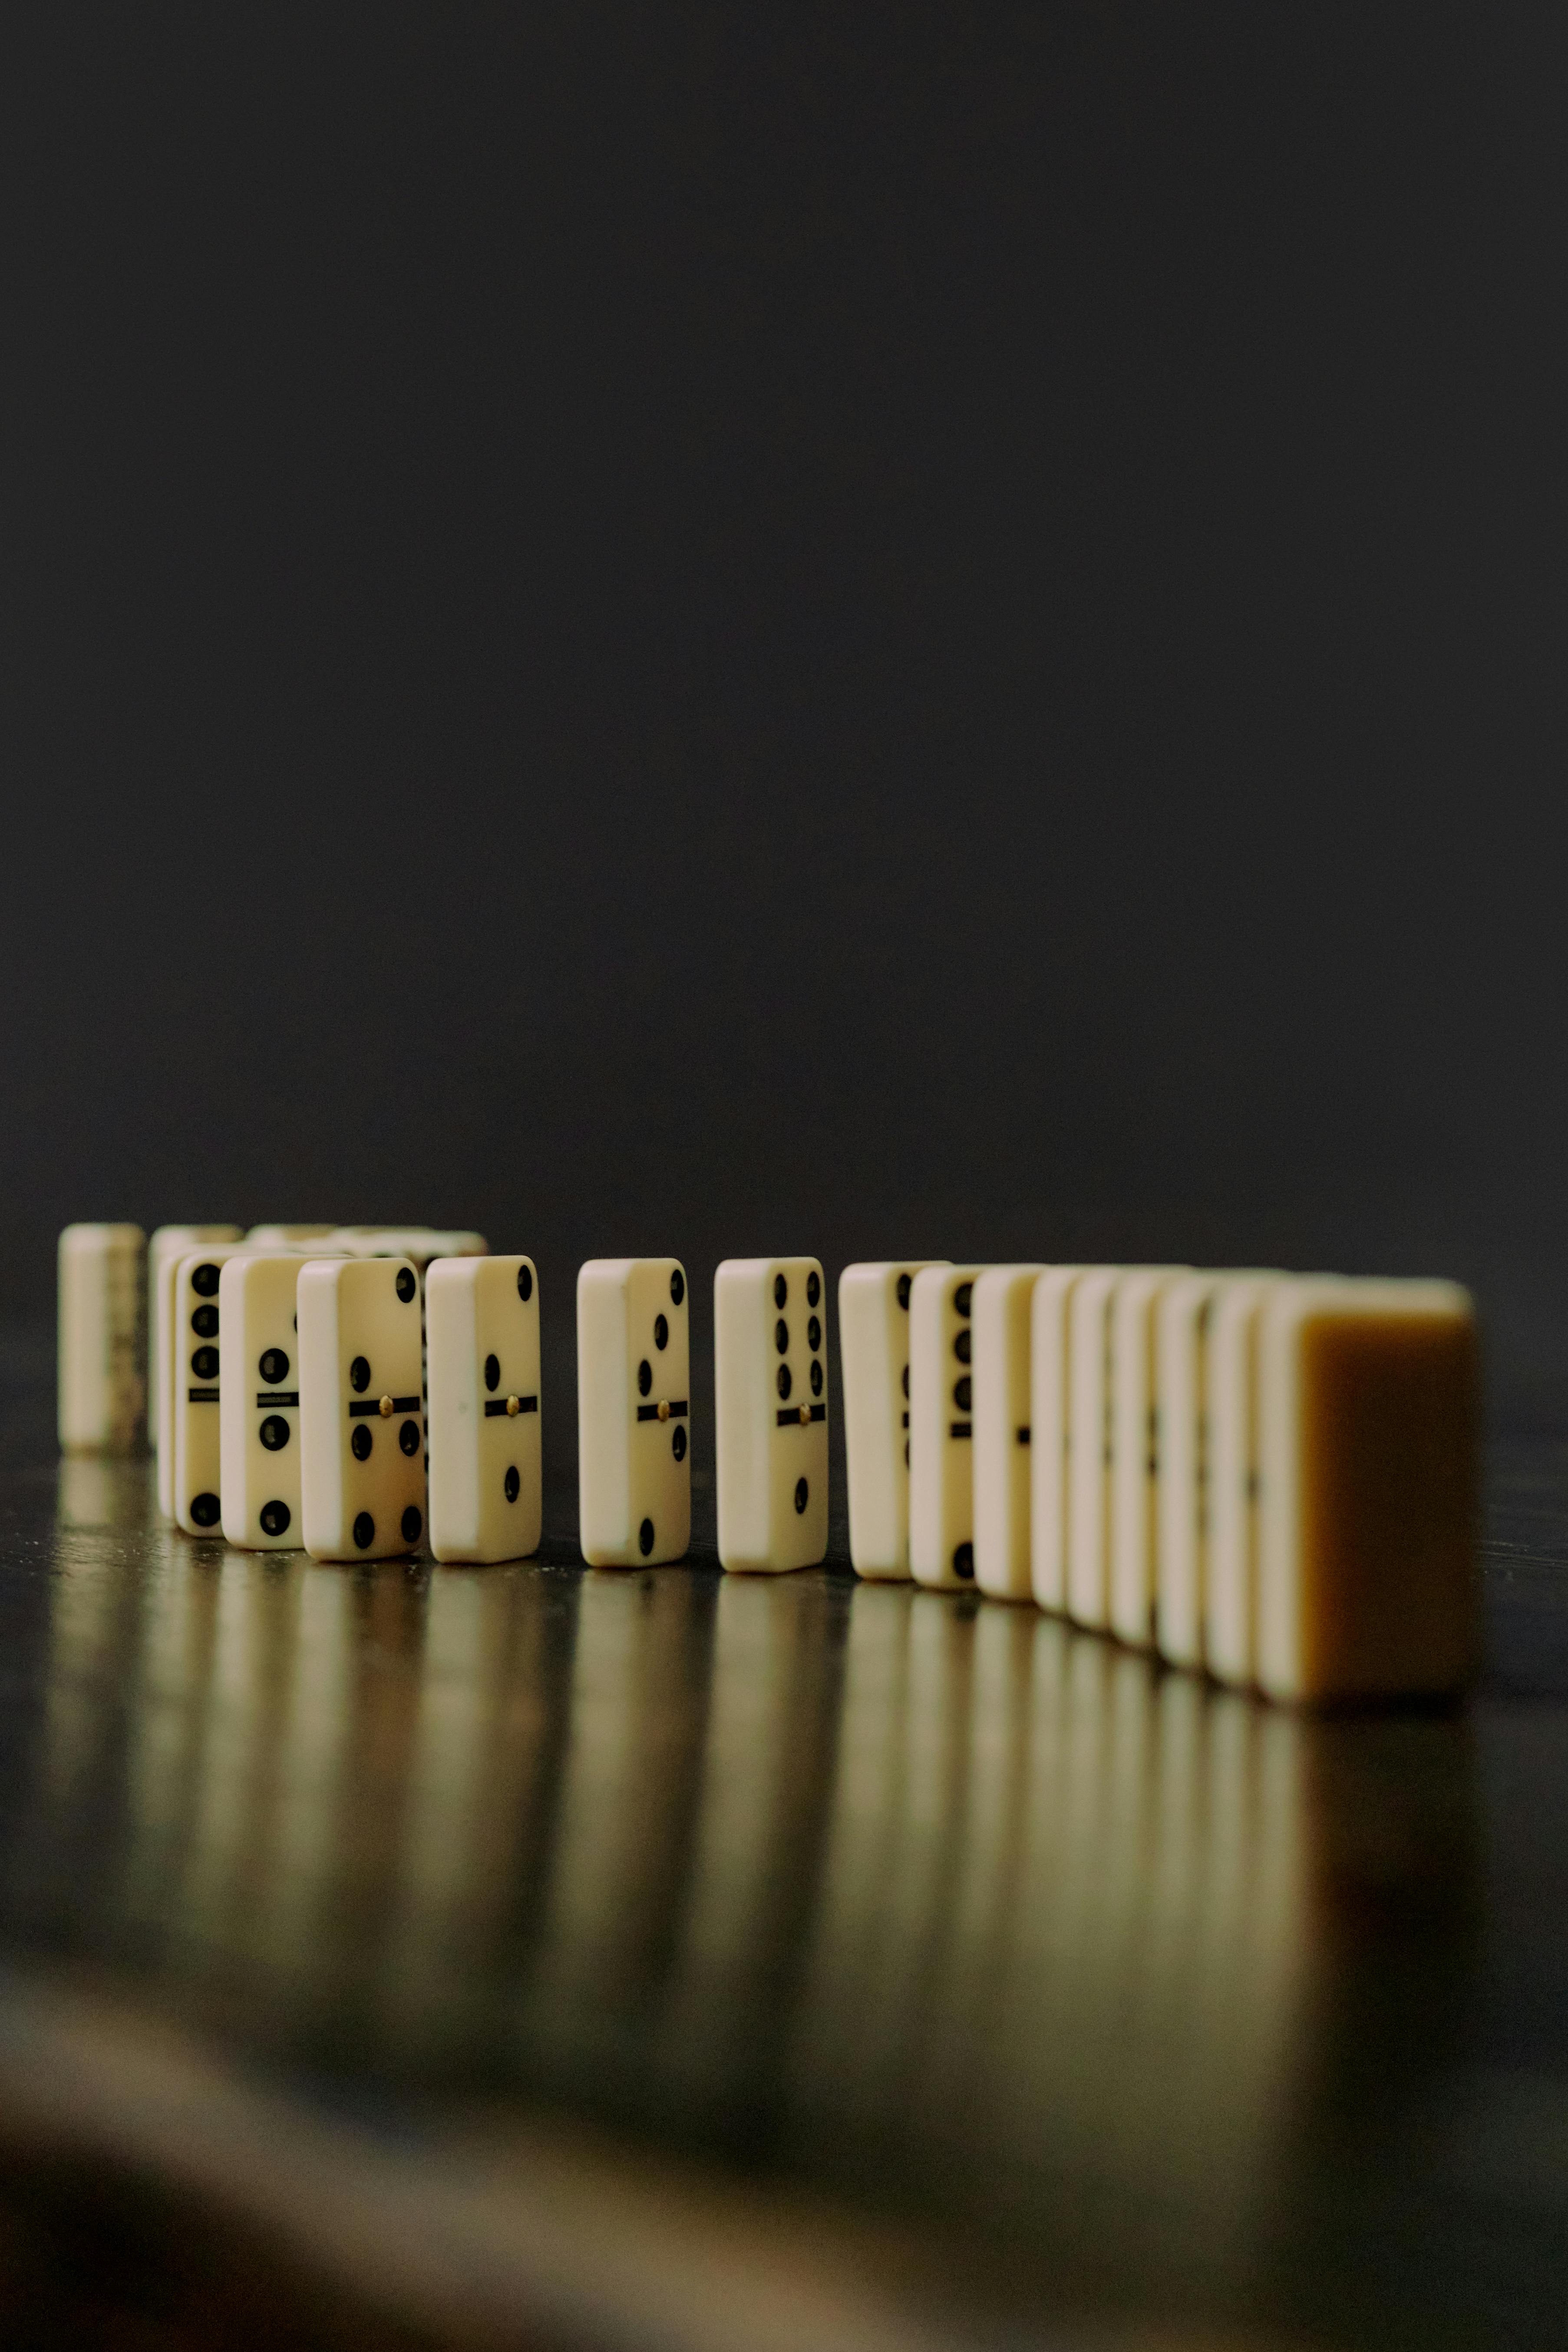 Dominoes | Quelle: Pexels